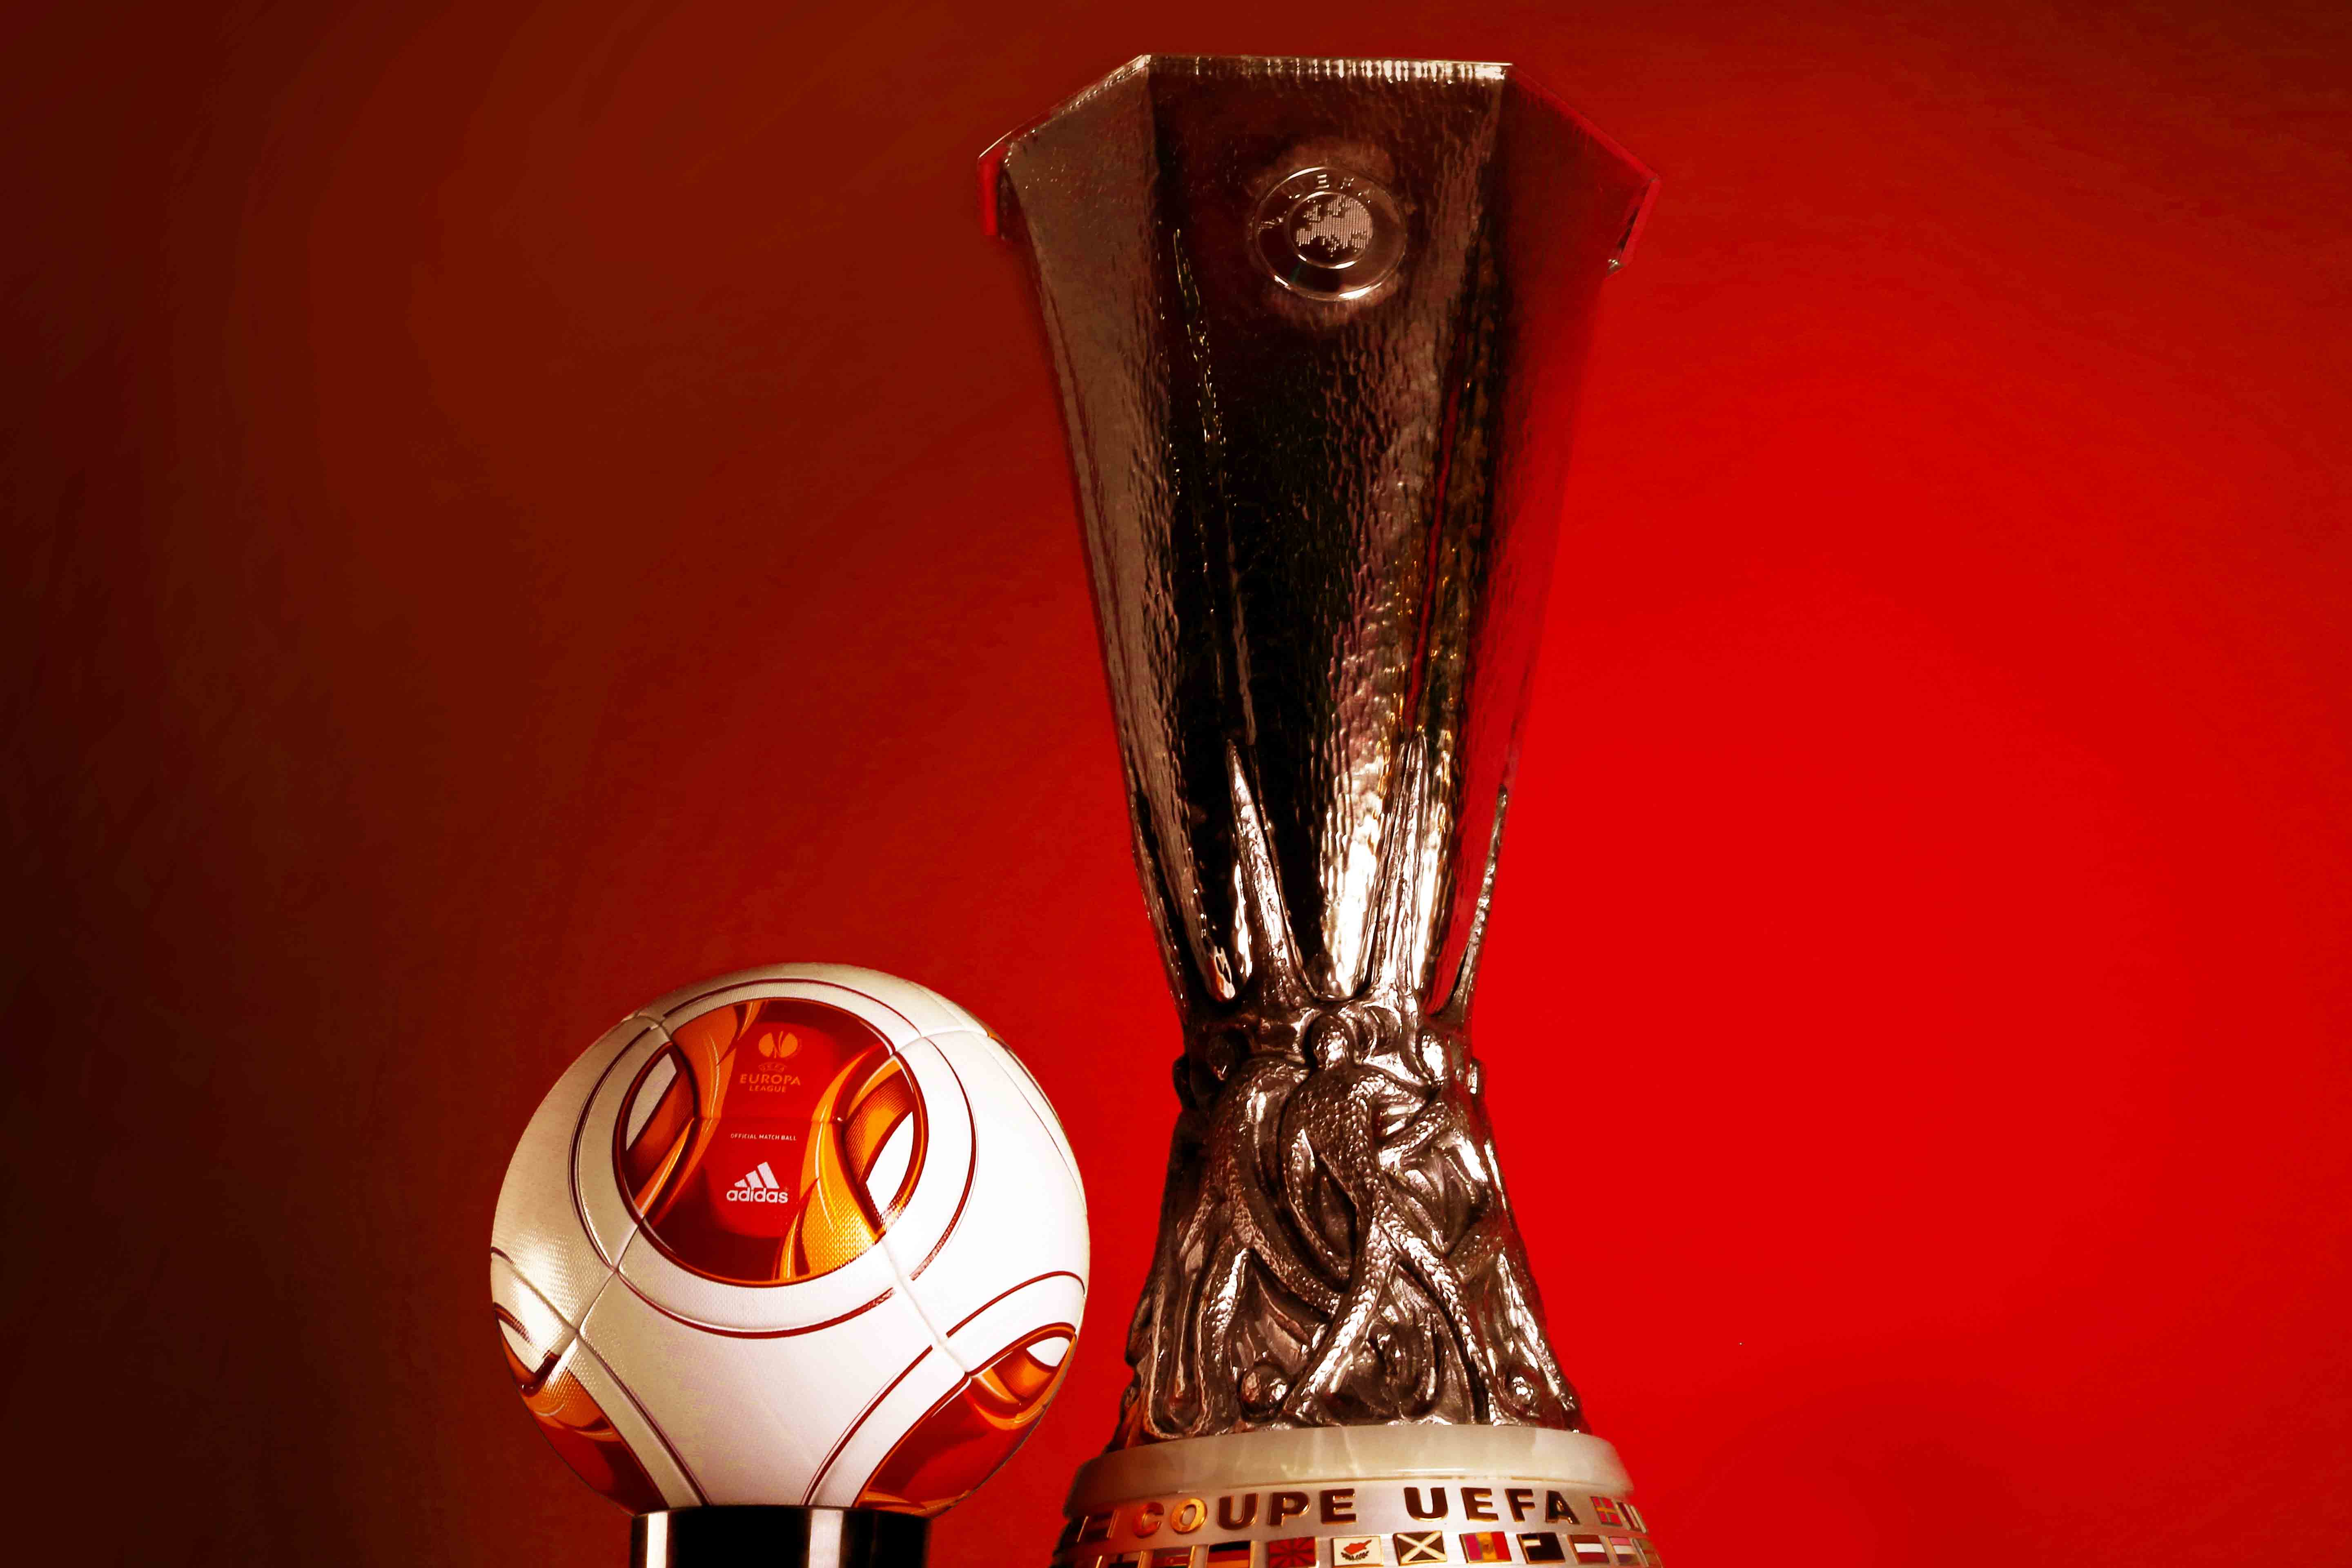 Uefa cup